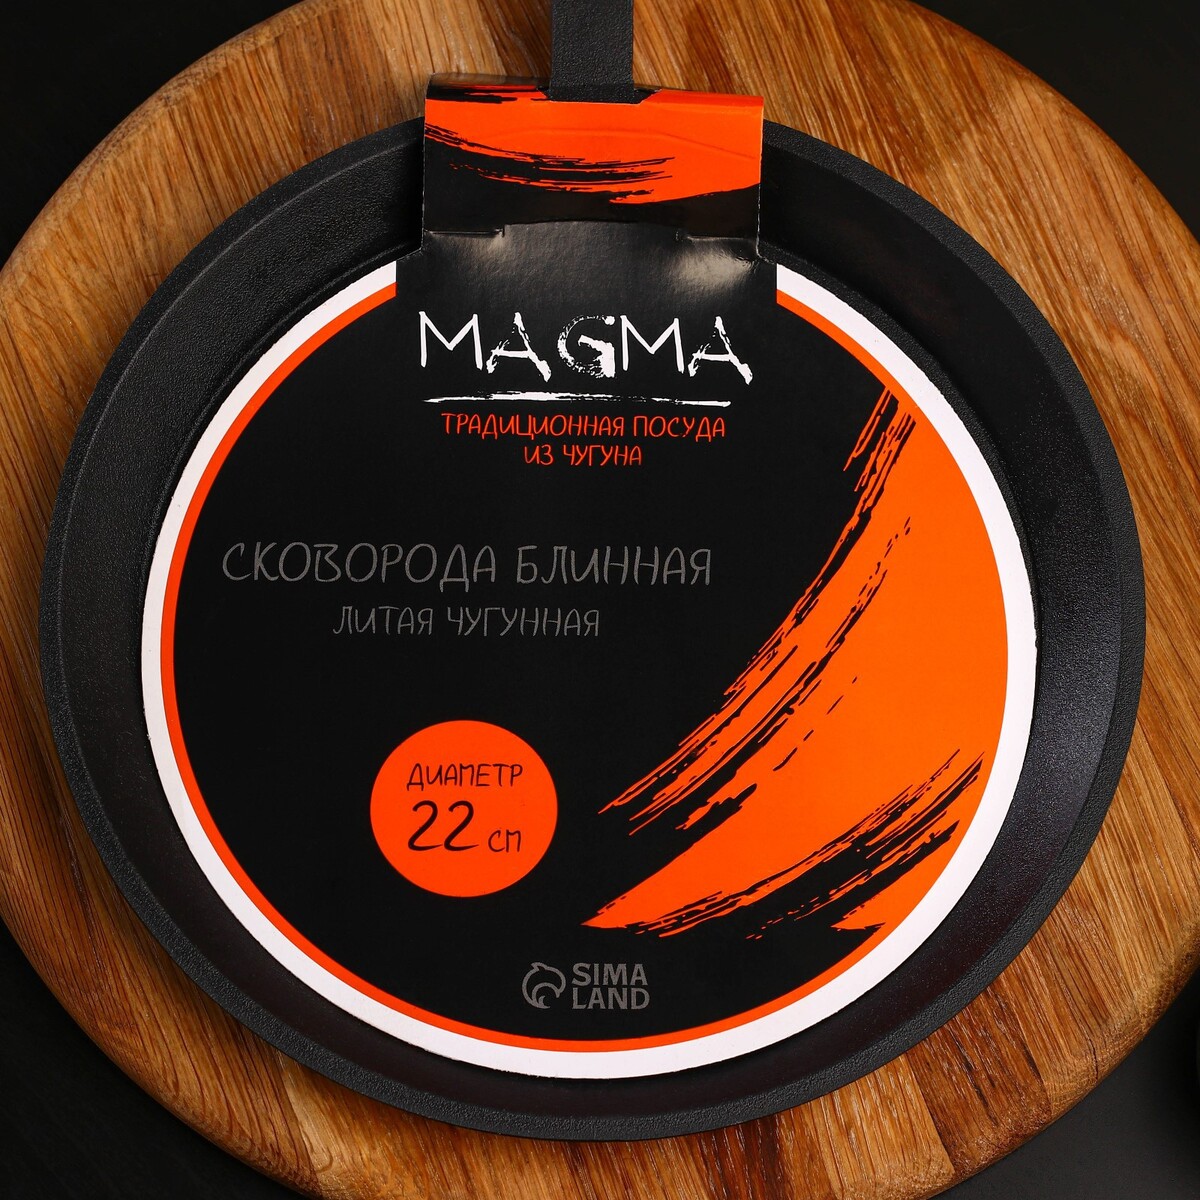 Сковорода блинная литая чугунная magma, d=22 см, h=1,5 см, деревянная ручка Magma, цвет черный 08126168 - фото 5